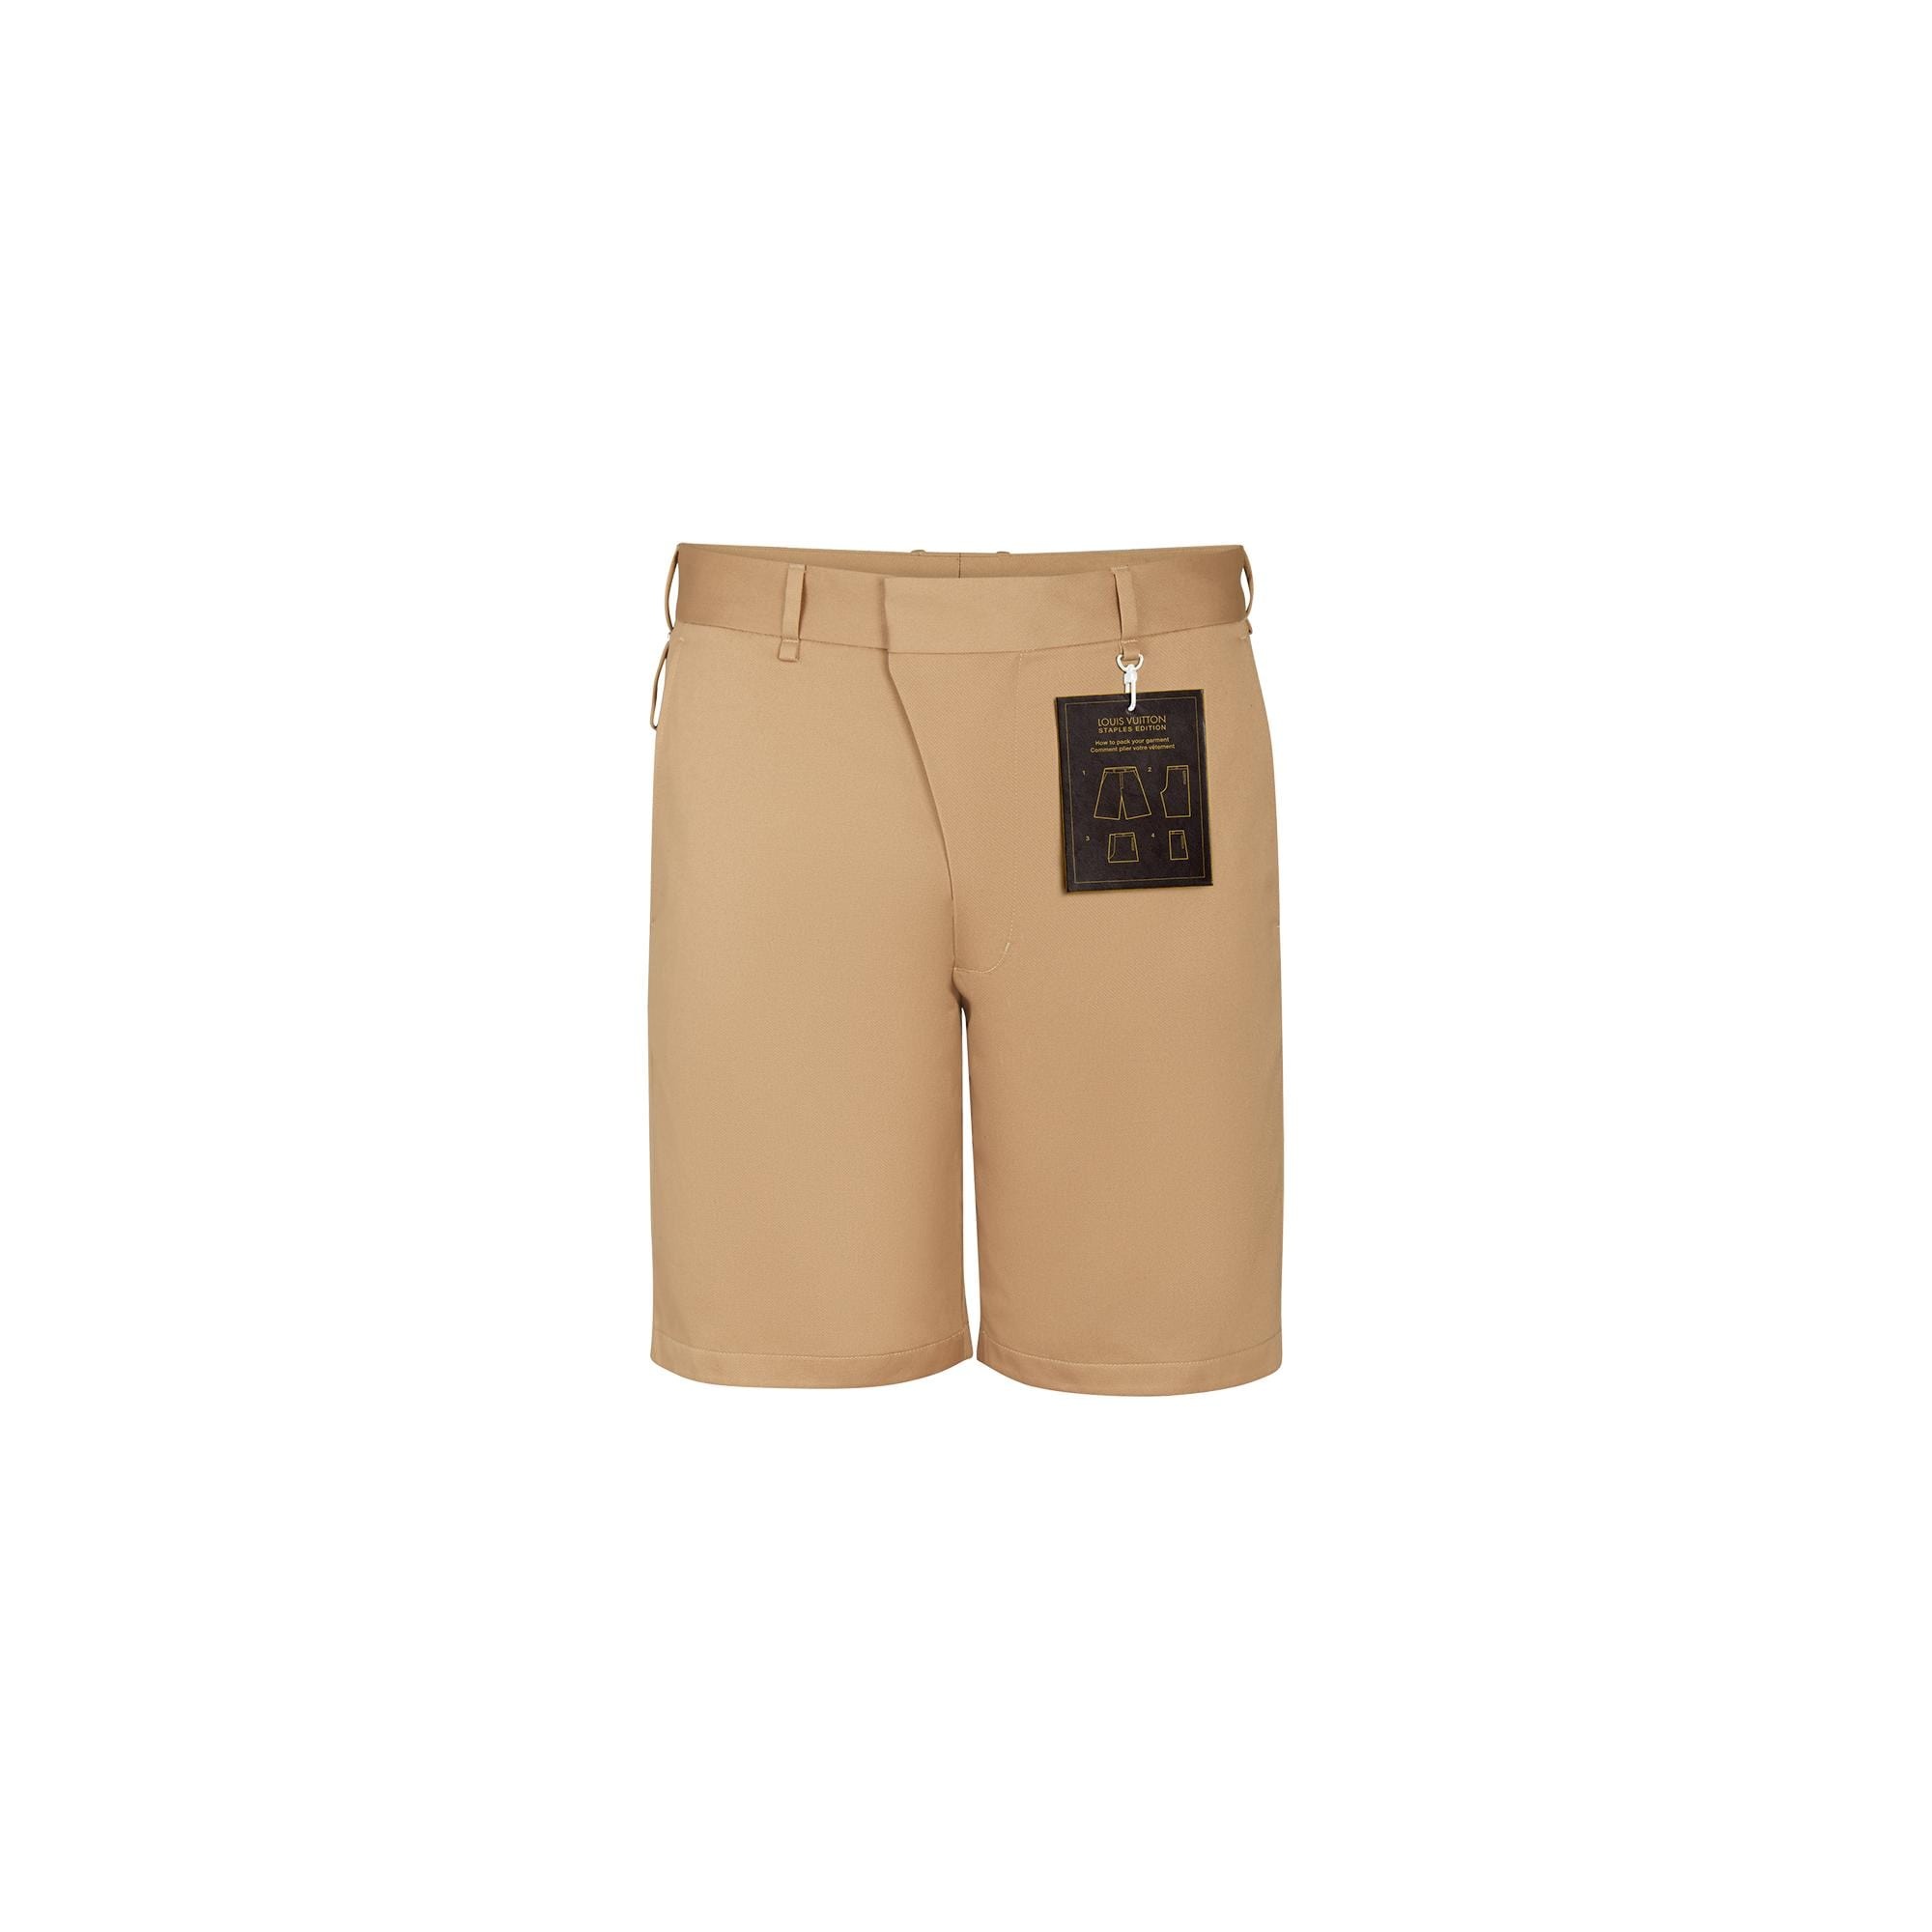 Cotton Chino Shorts - 1